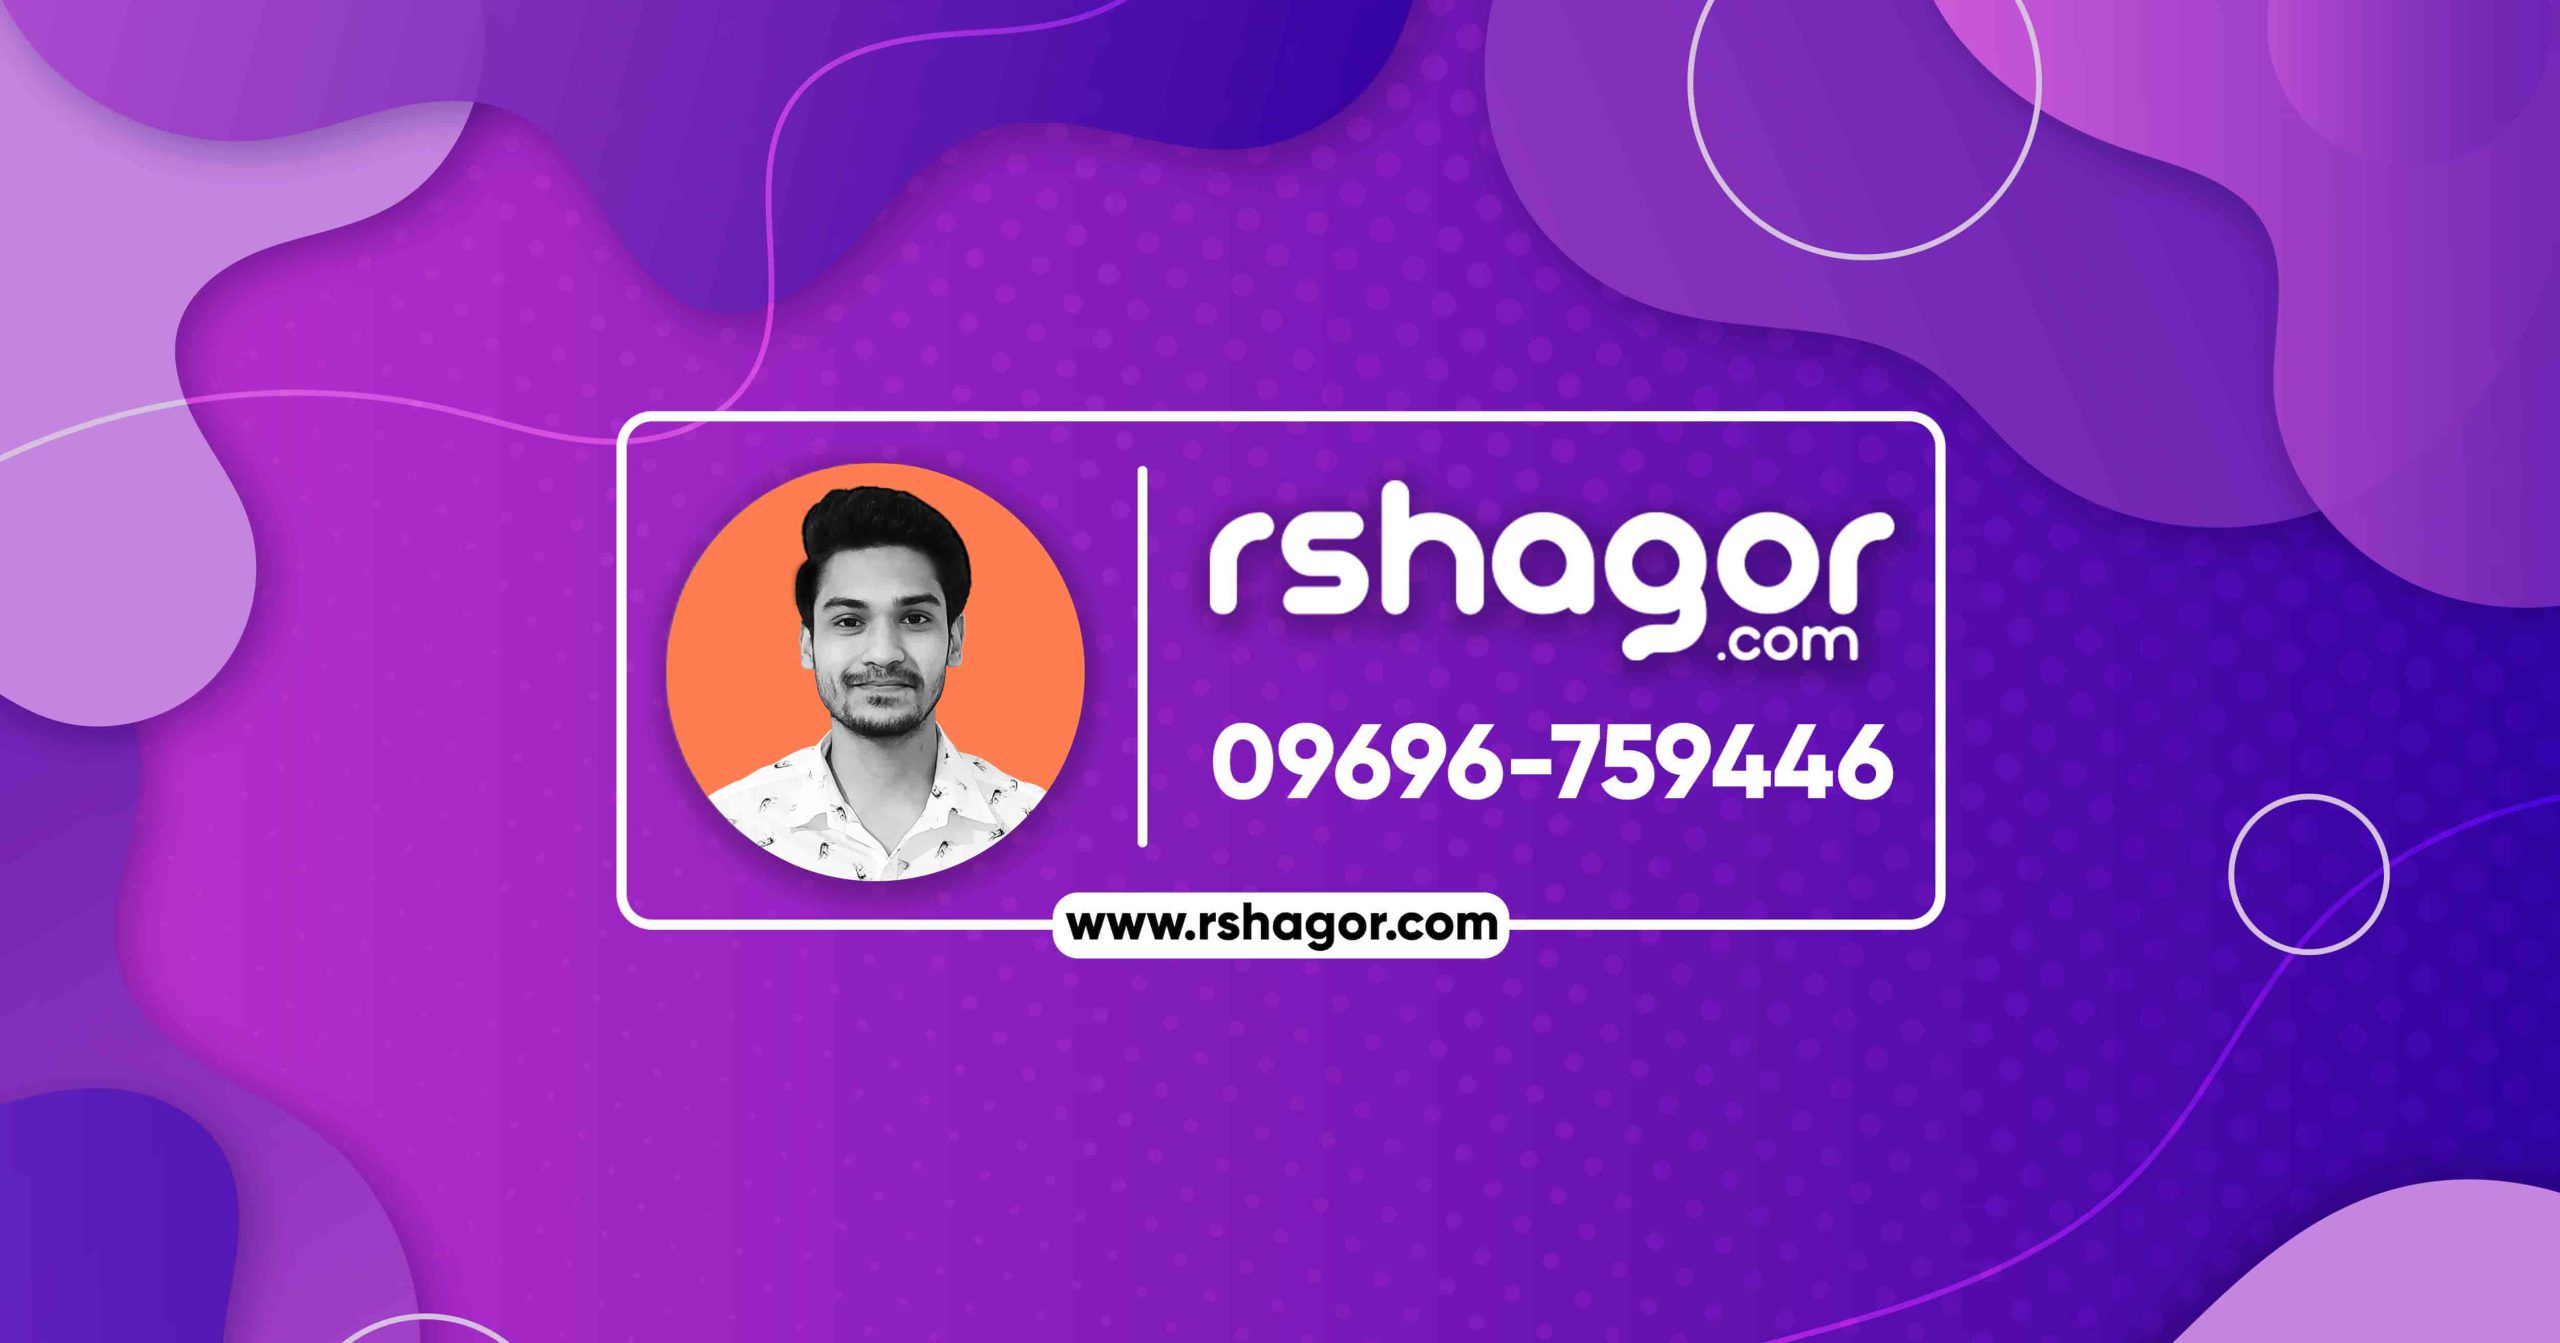 rshagor.com